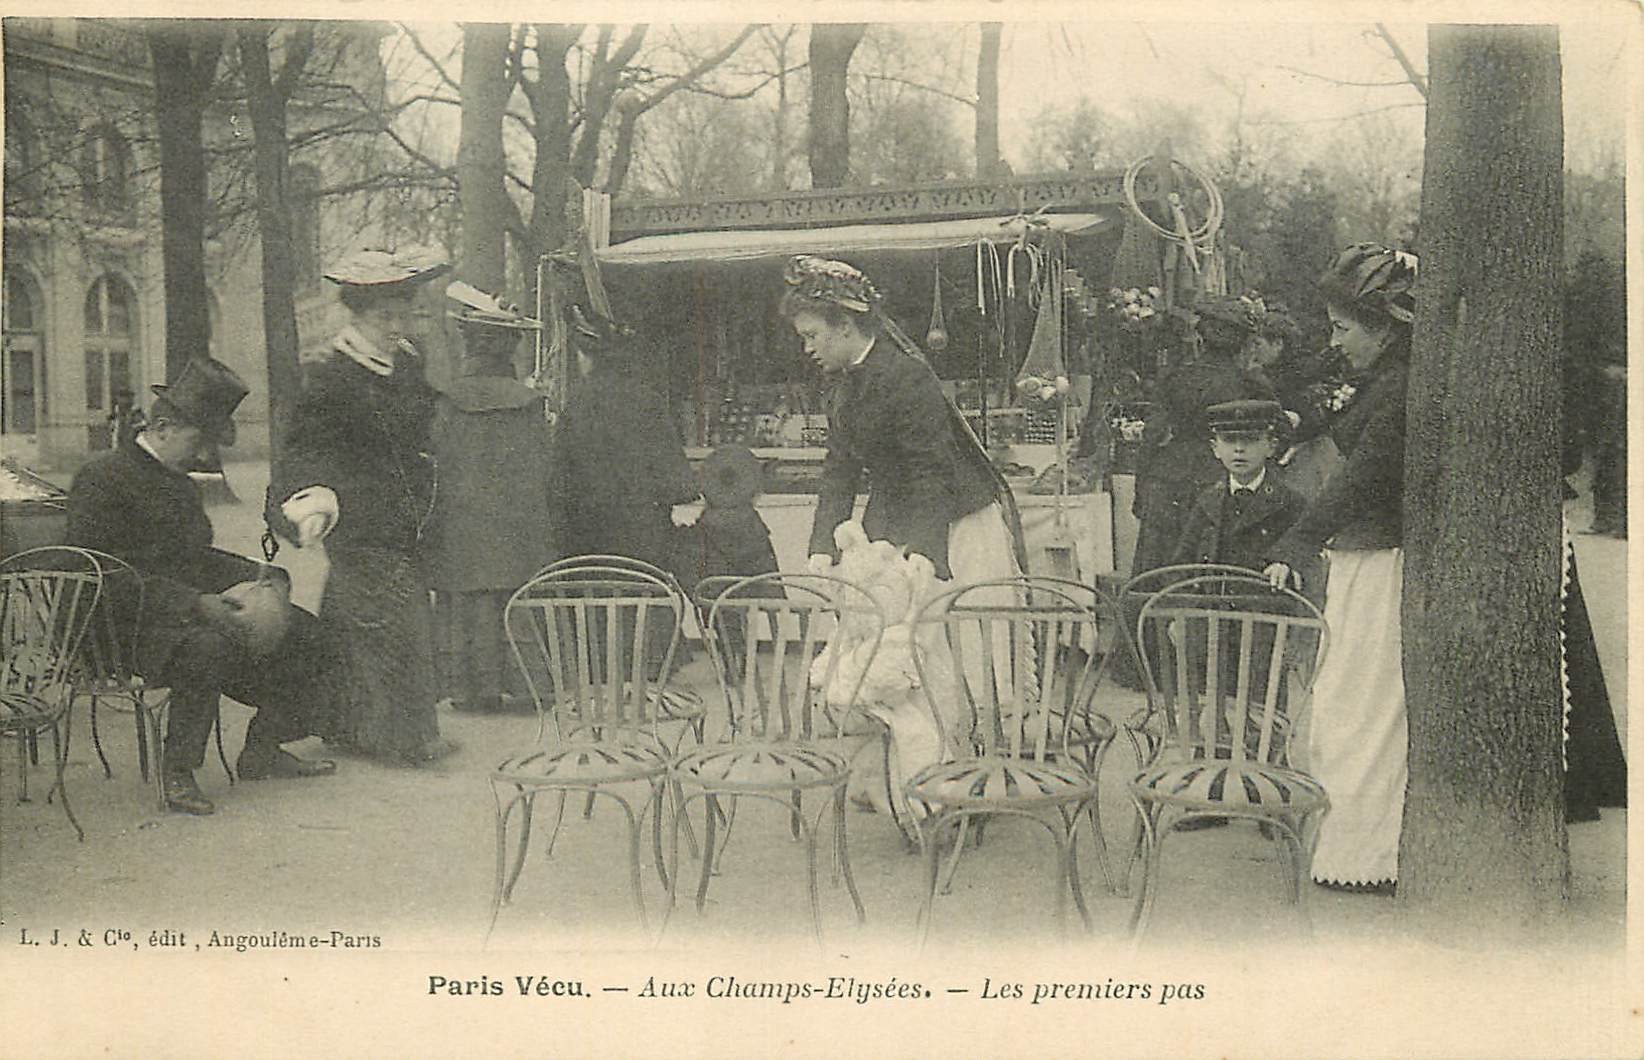 WW PARIS VECU. Les premiers pas avec Nurses au Champs Elysees